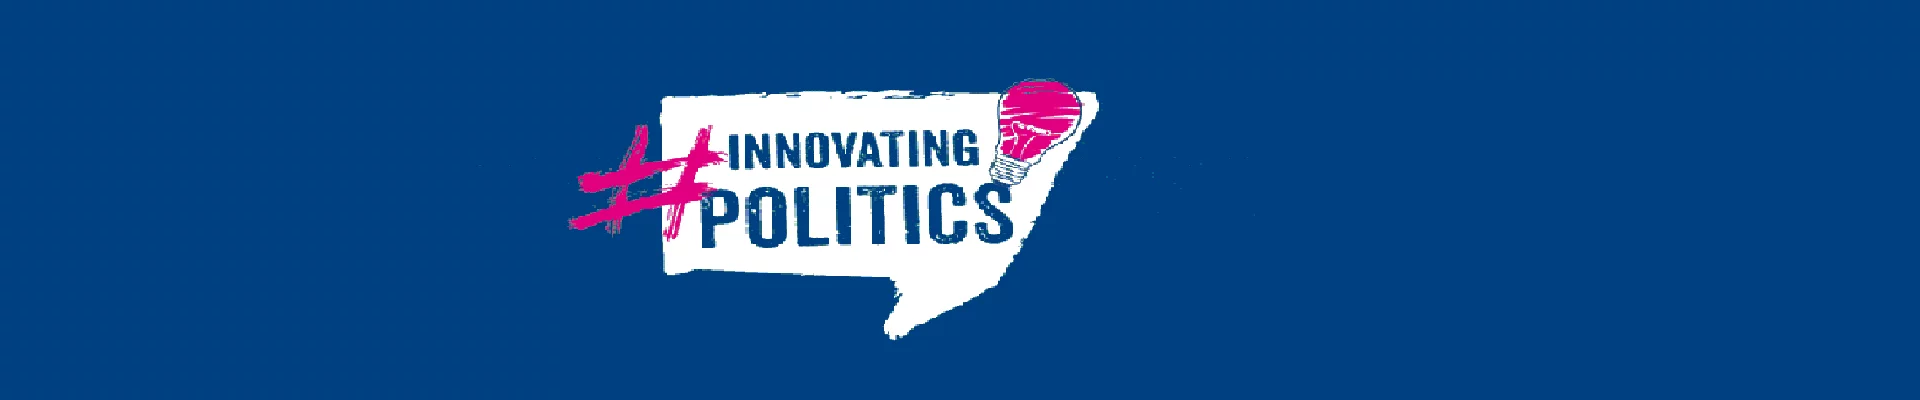 Innovation in Politics banner